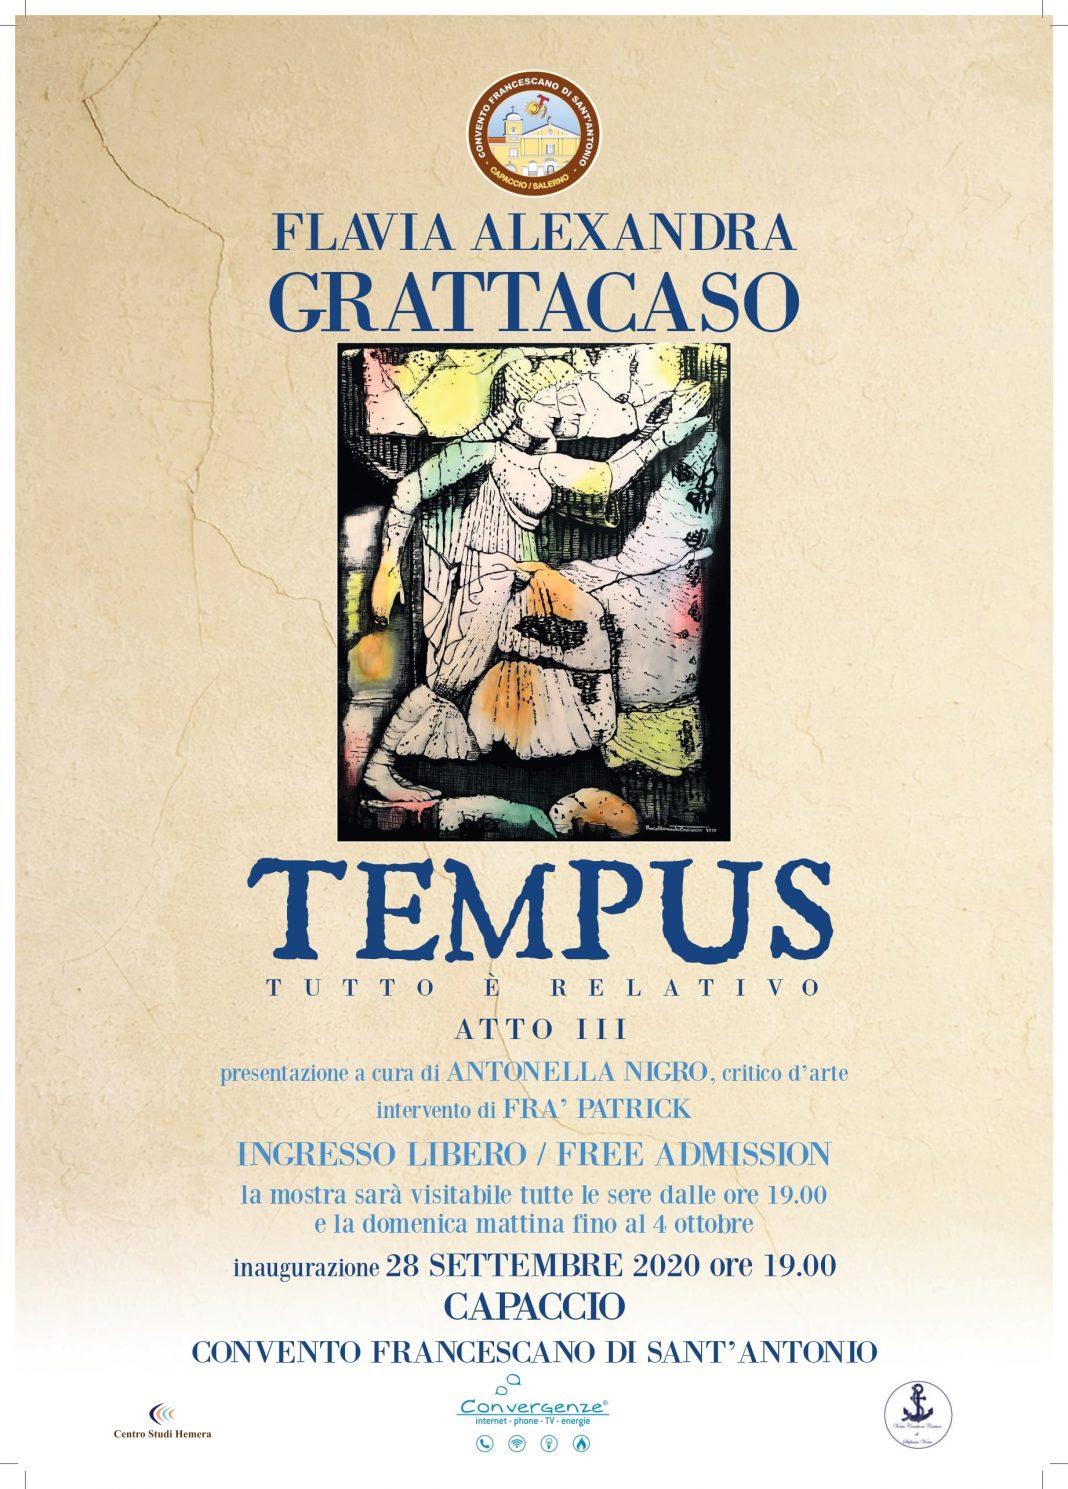 Flavia Alexandra Grattacaso – Tempus: Tutto è Relativo, Atto IIIhttps://www.exibart.com/repository/media/formidable/11/TEMPUS-Atto-III-min-1-1068x1489.jpg